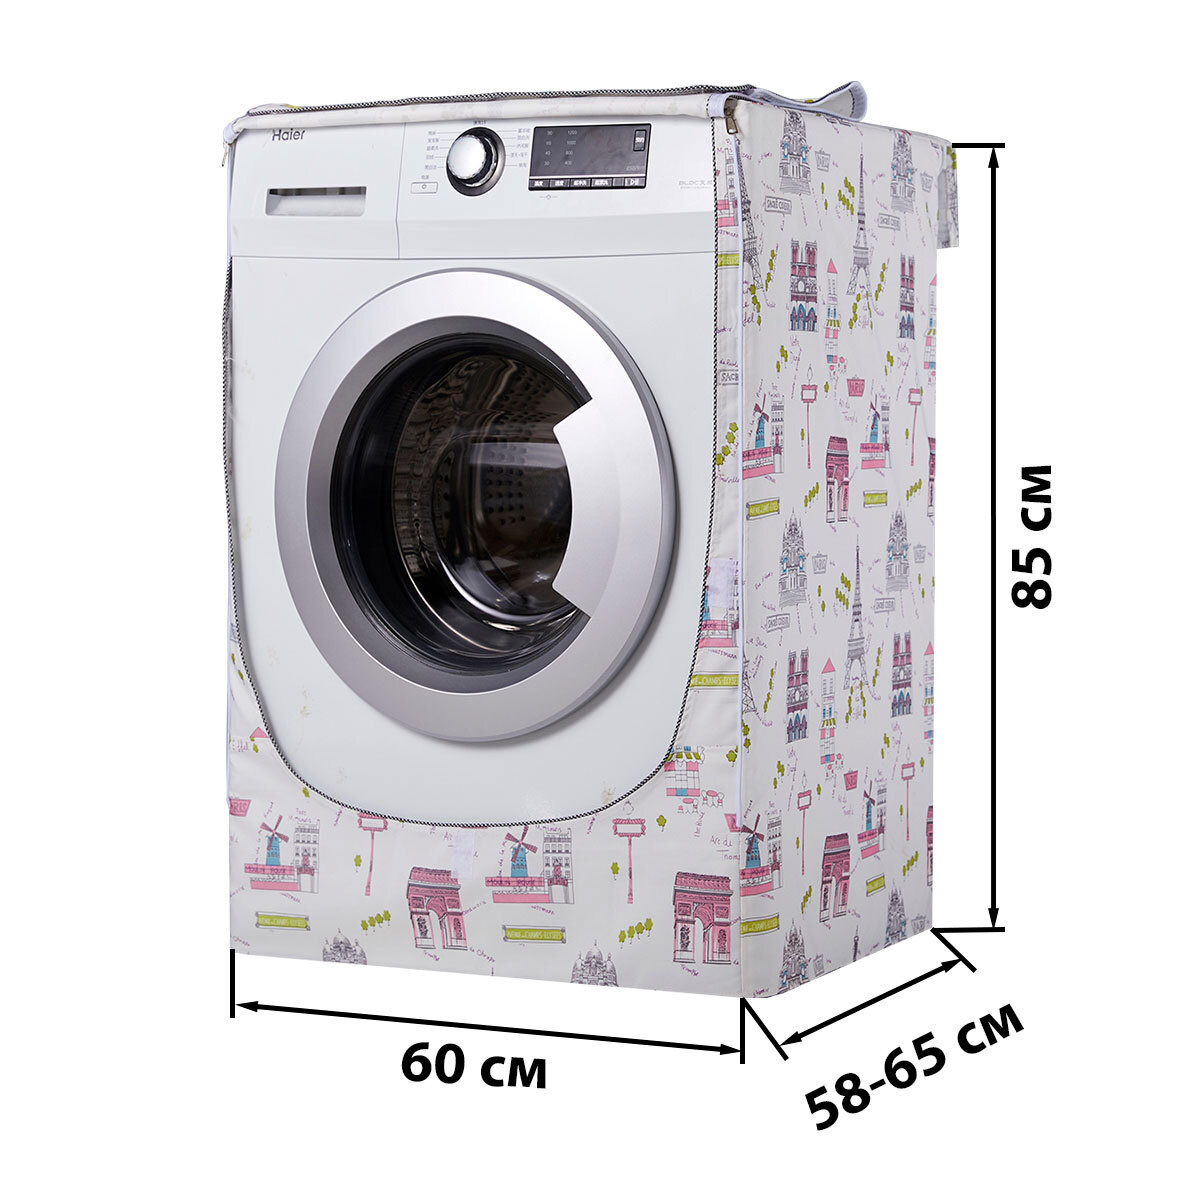 Подходит для стиральных машинок глубиной от 58 до 65 см